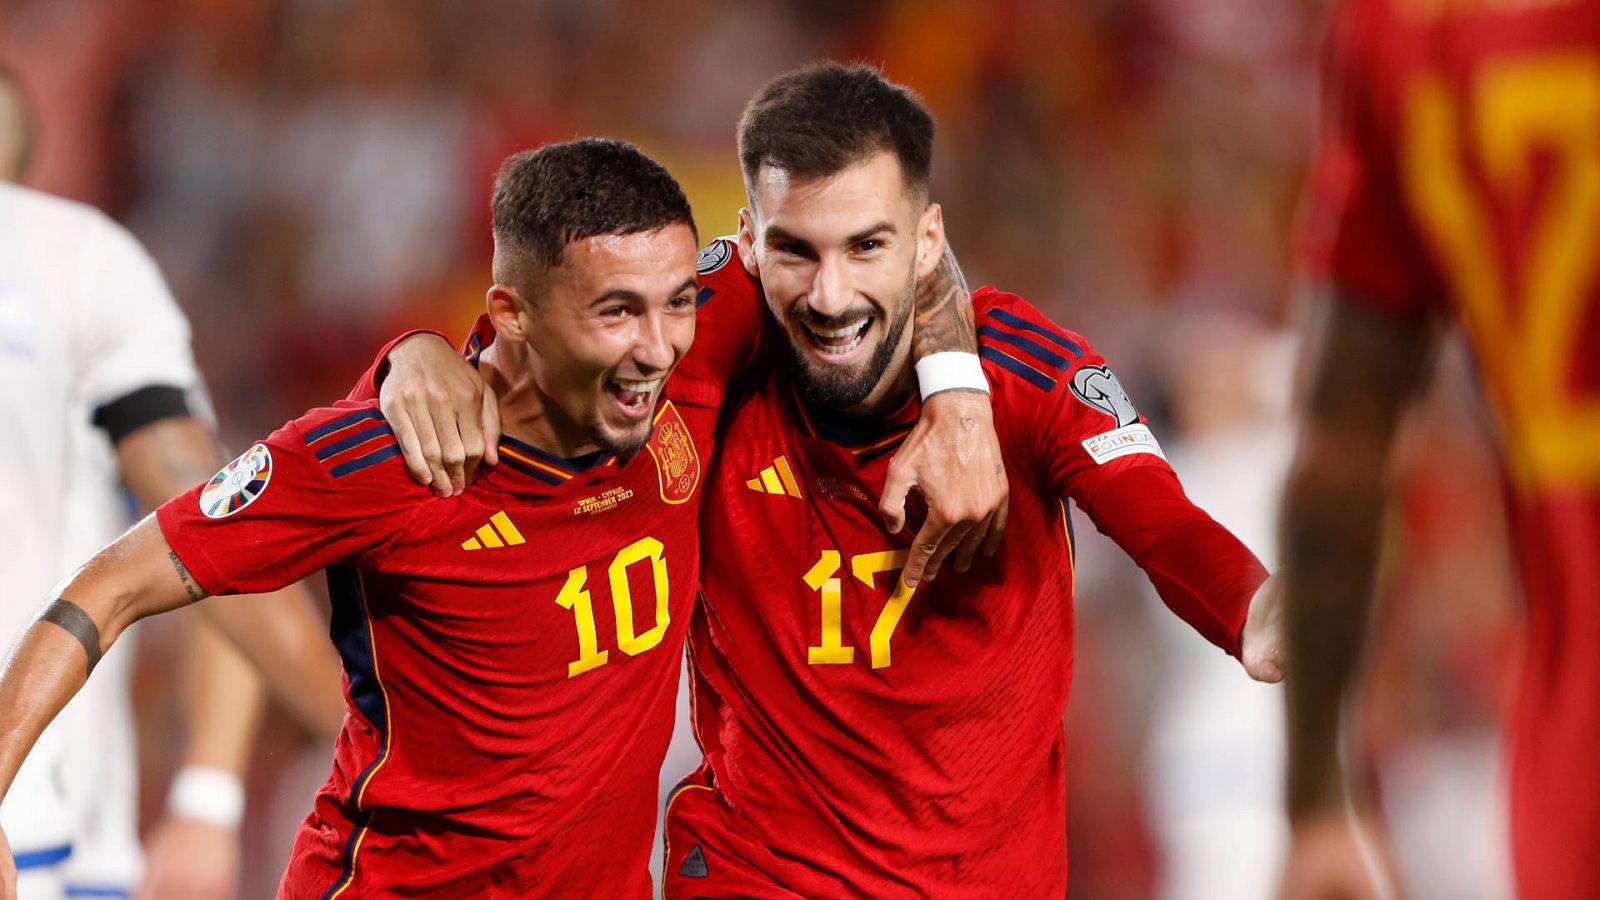 España - Chipre | Álex Baena marca nada más debutar con la selección (5-0) -- Ver ahora